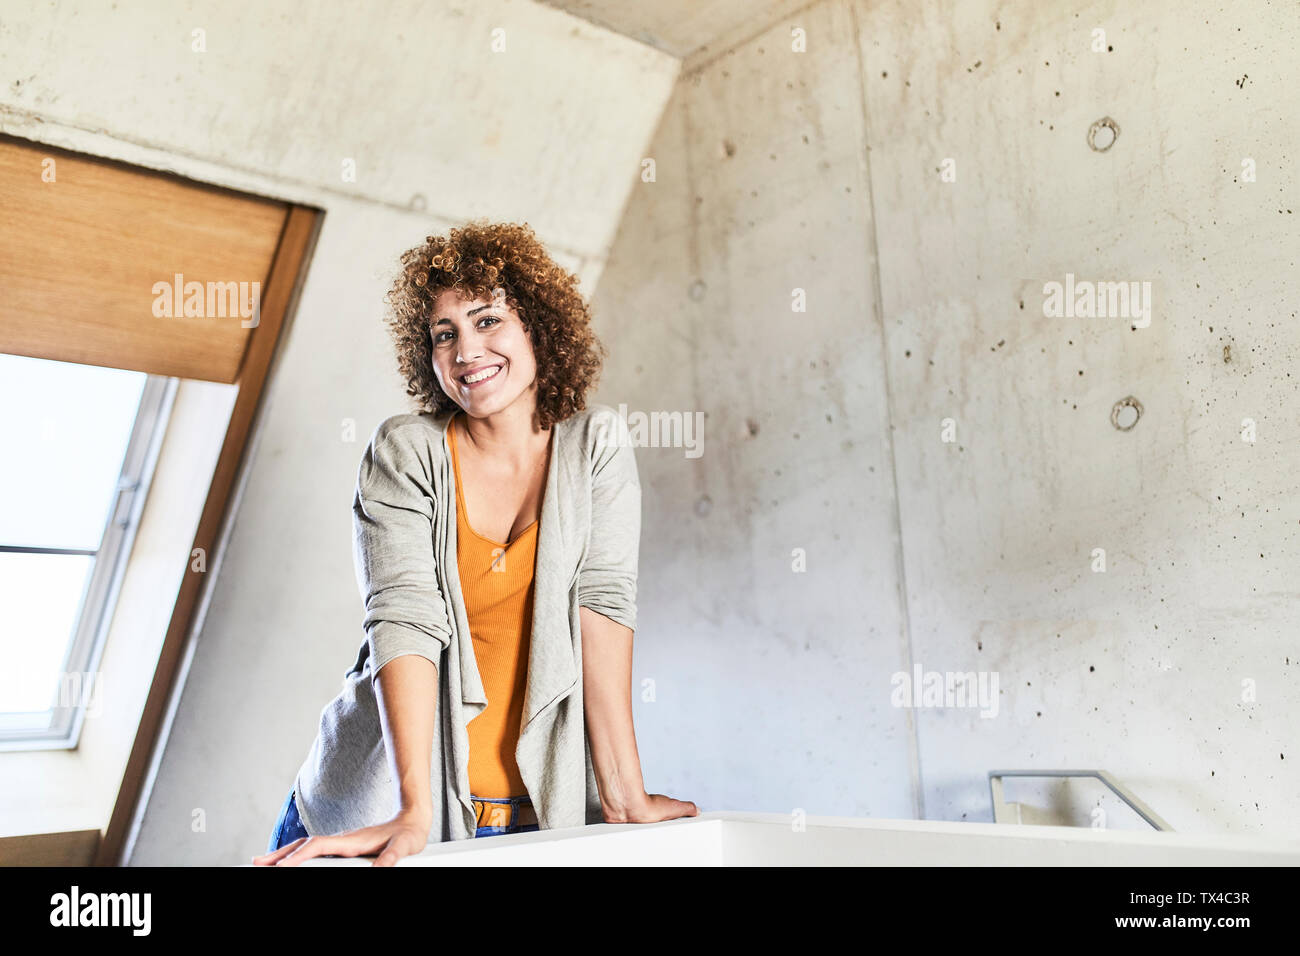 Ritratto di donna sorridente sul piano superiore Foto Stock